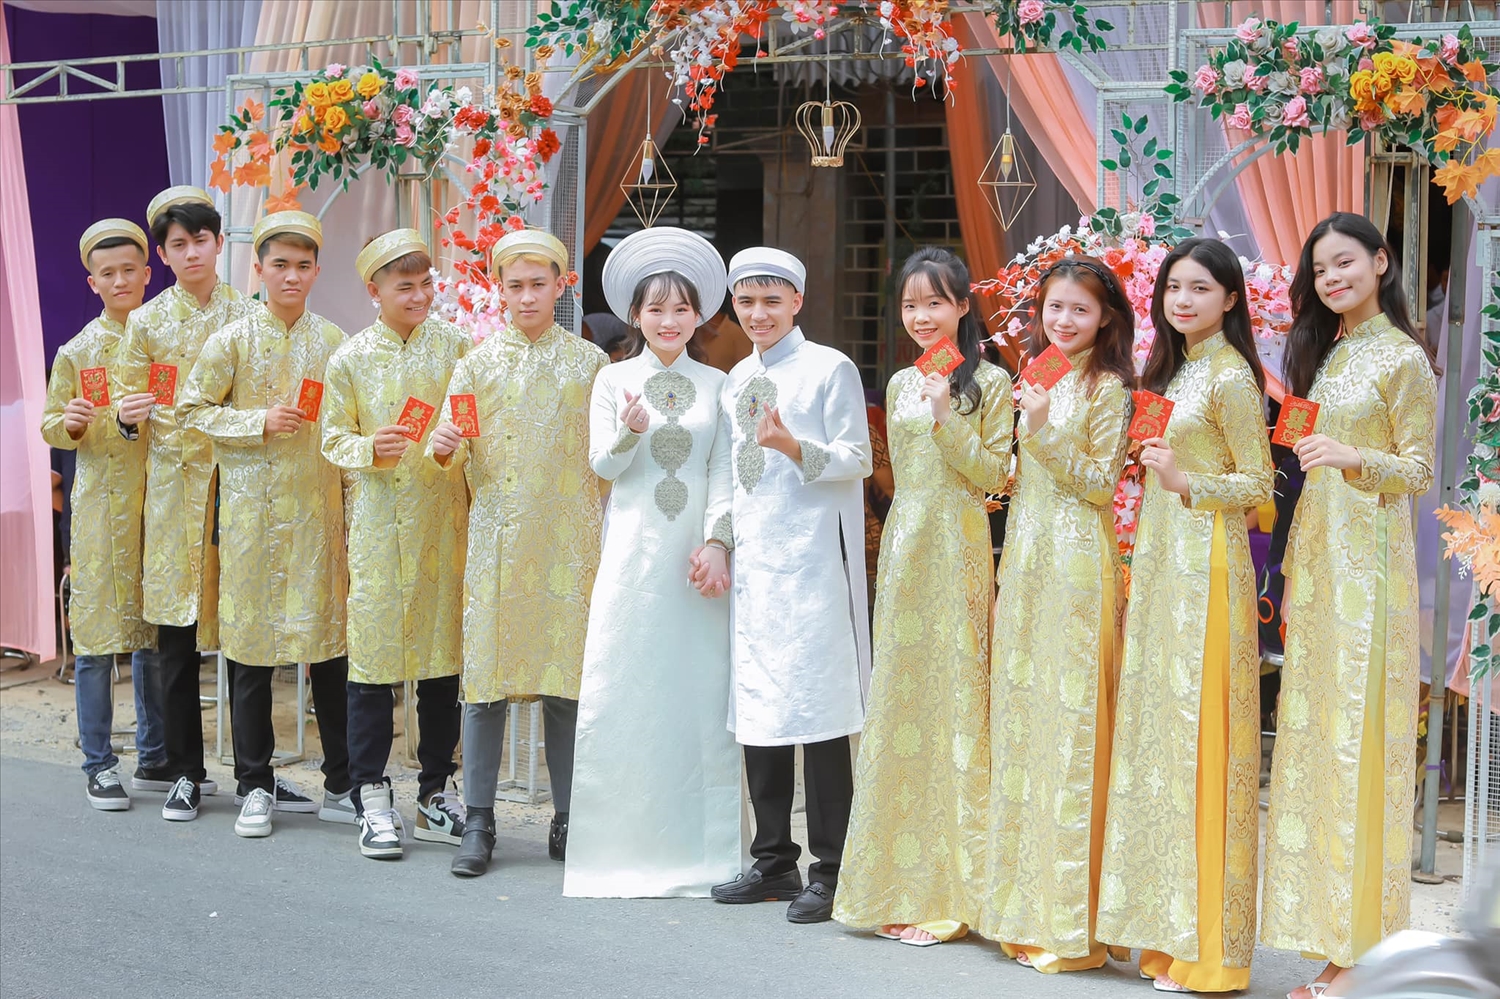 Cô dâu, chú rể người Việt (giữa) trong trang phục cưới truyền thống